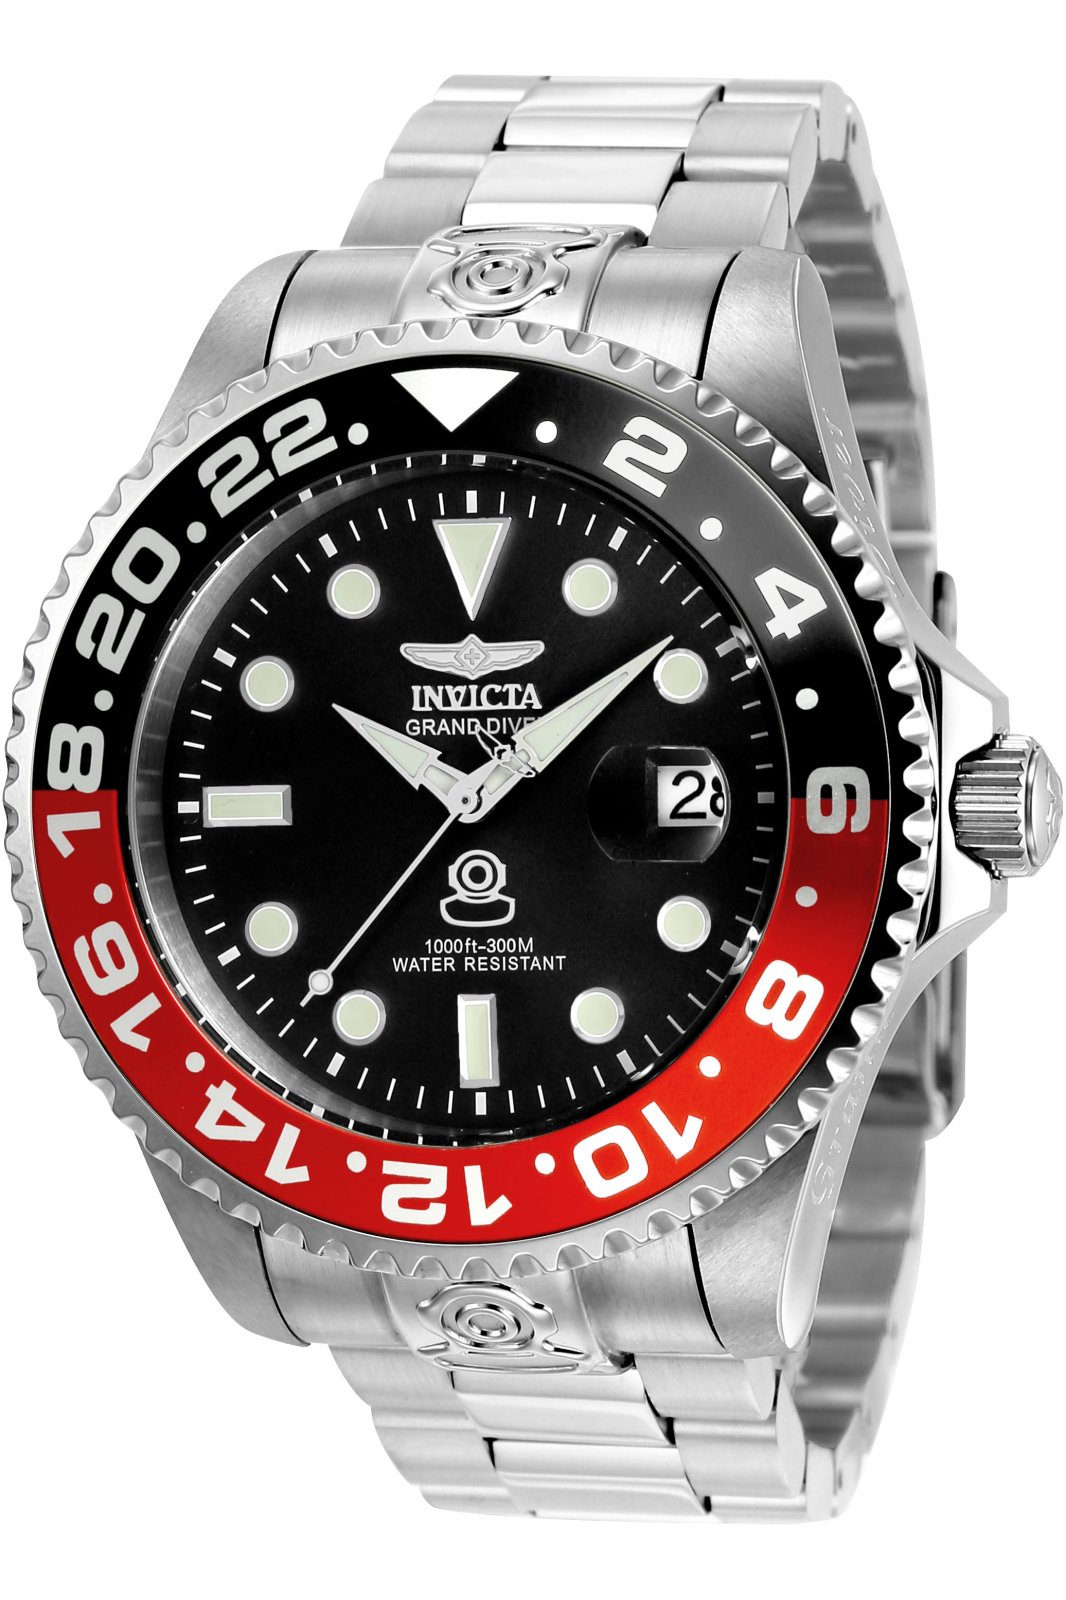 Invicta Grand Diver 21867 Men's Automatic Watch - 47mm